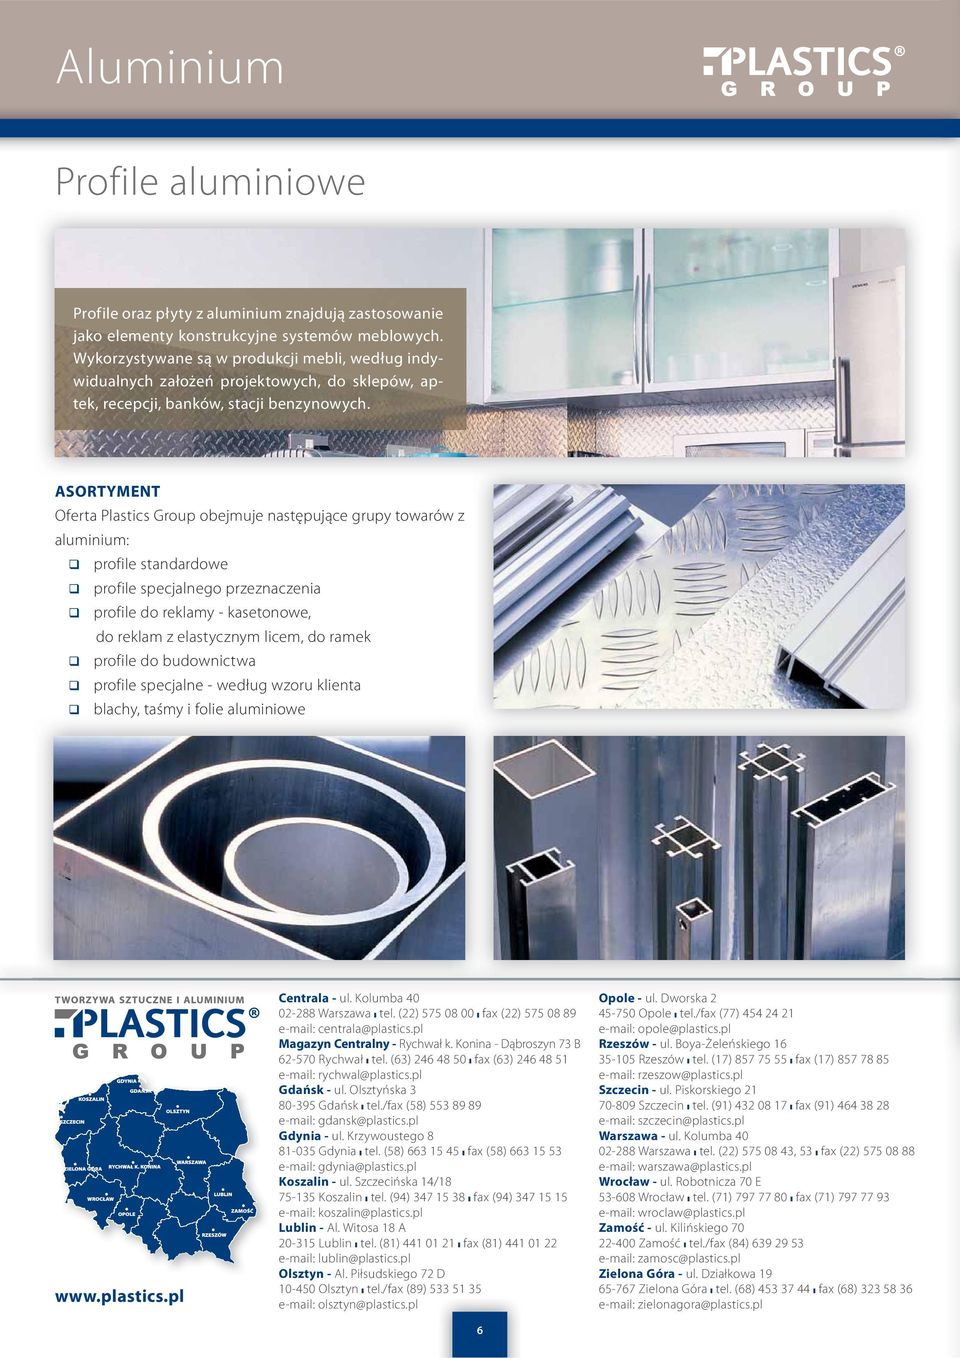 ASORTYMENT Oferta Plastics Group obejmuje następujące grupy towarów z aluminium: profile standardowe profile specjalnego przeznaczenia profile do reklamy - kasetonowe, do reklam z elastycznym licem,